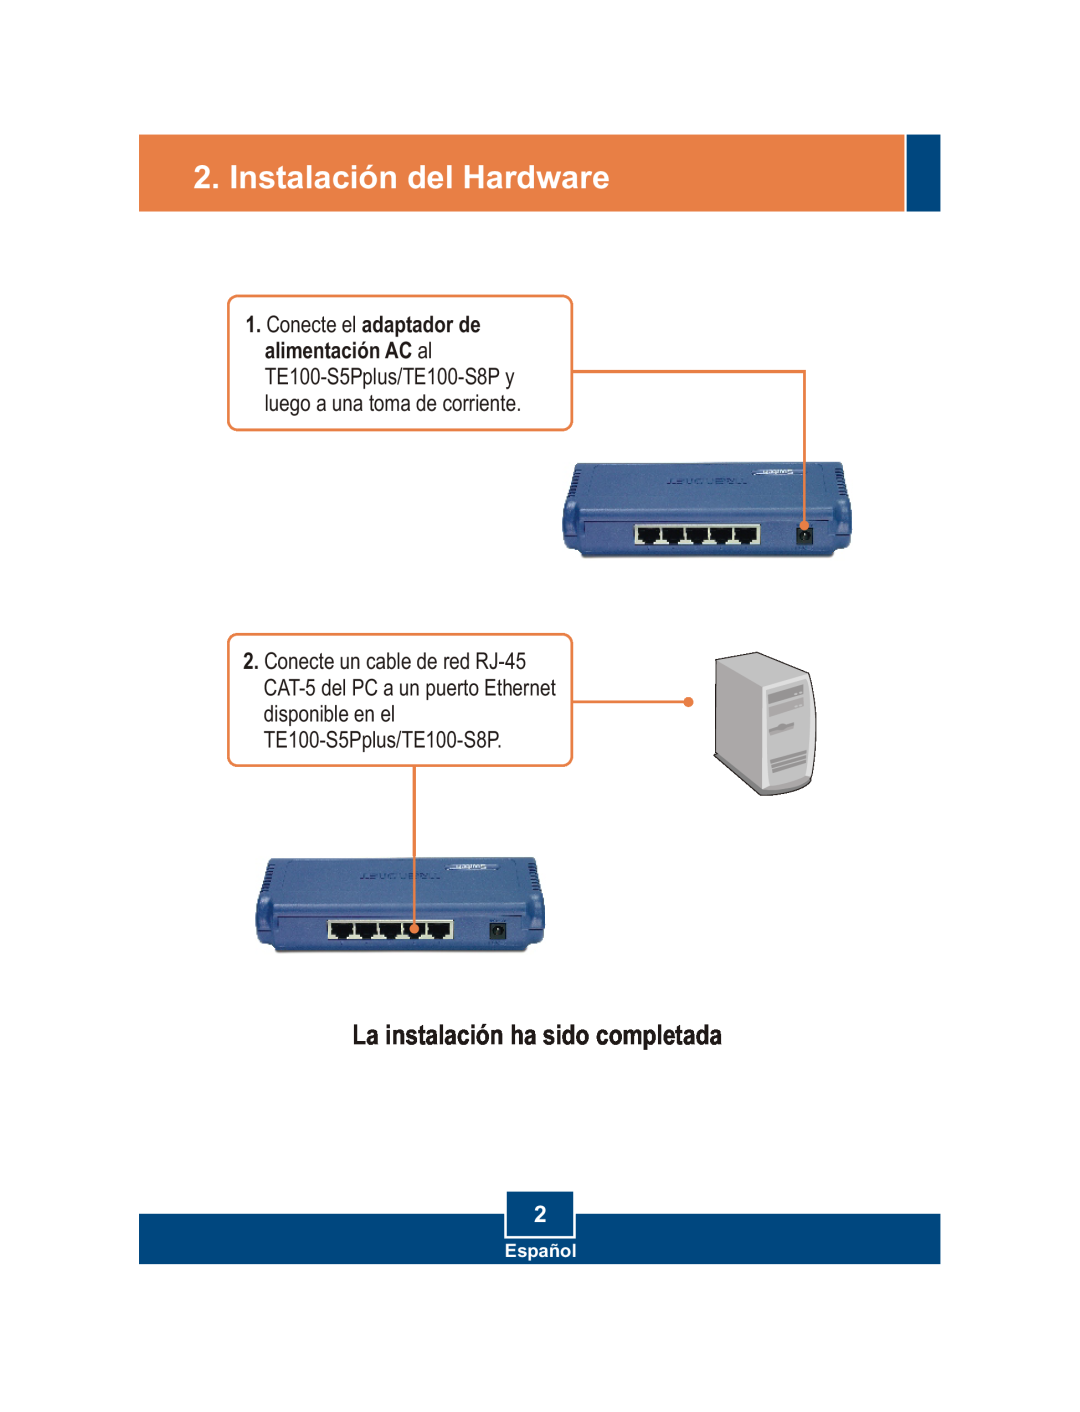 TRENDnet S5Pplus manual Instalación del Hardware, La instalación ha sido completada, Español 